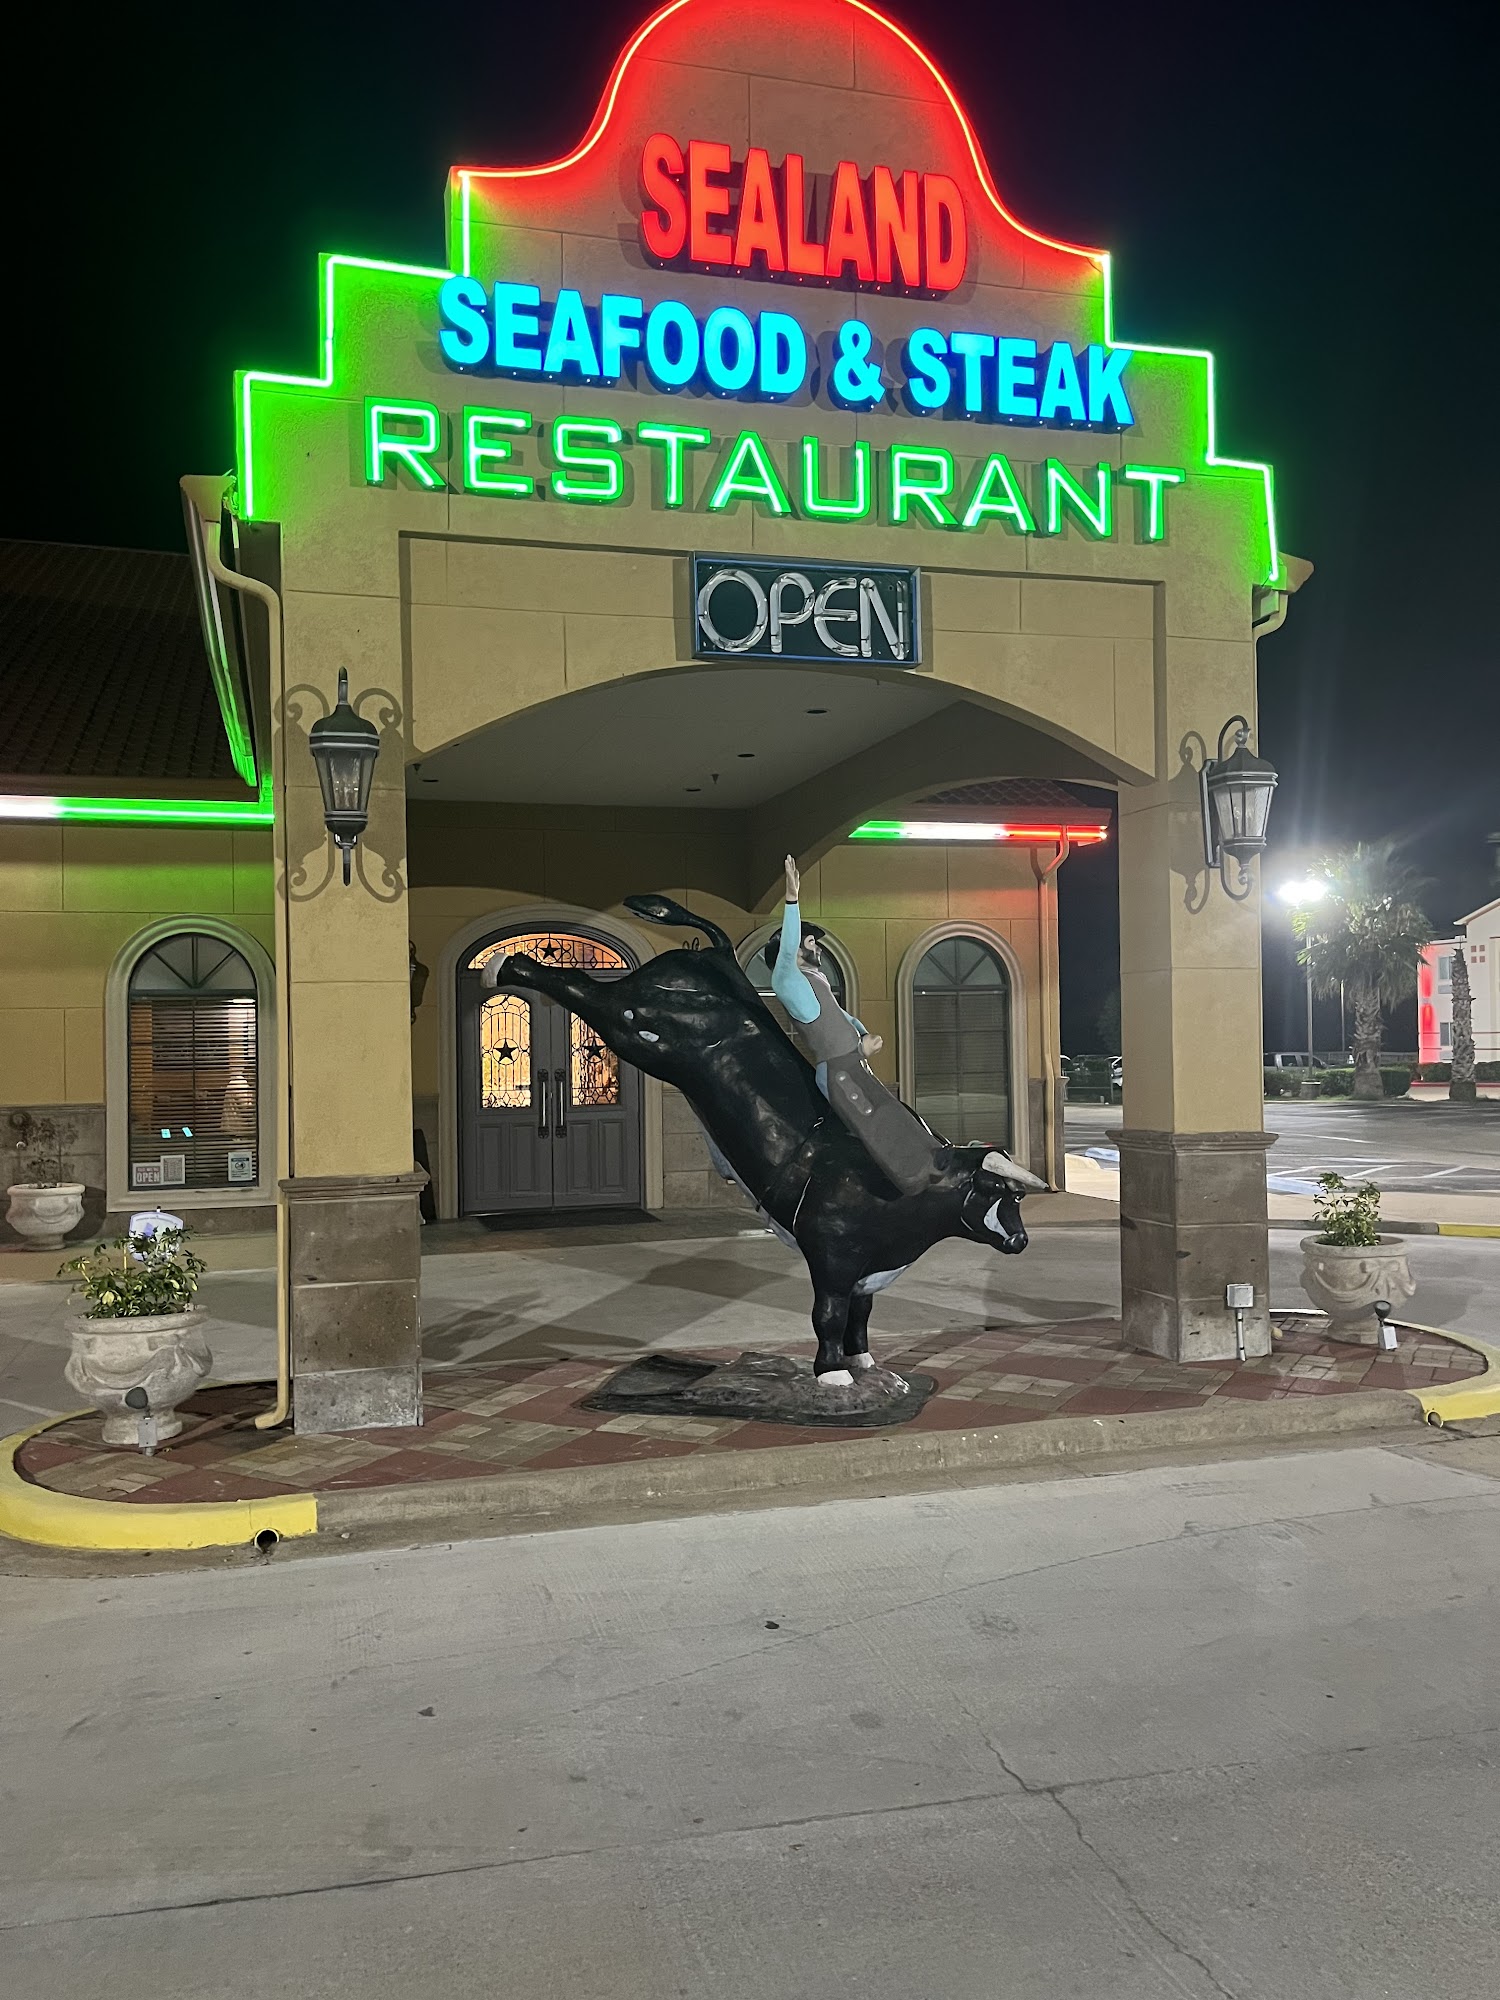 Sealand Seafood & Steak